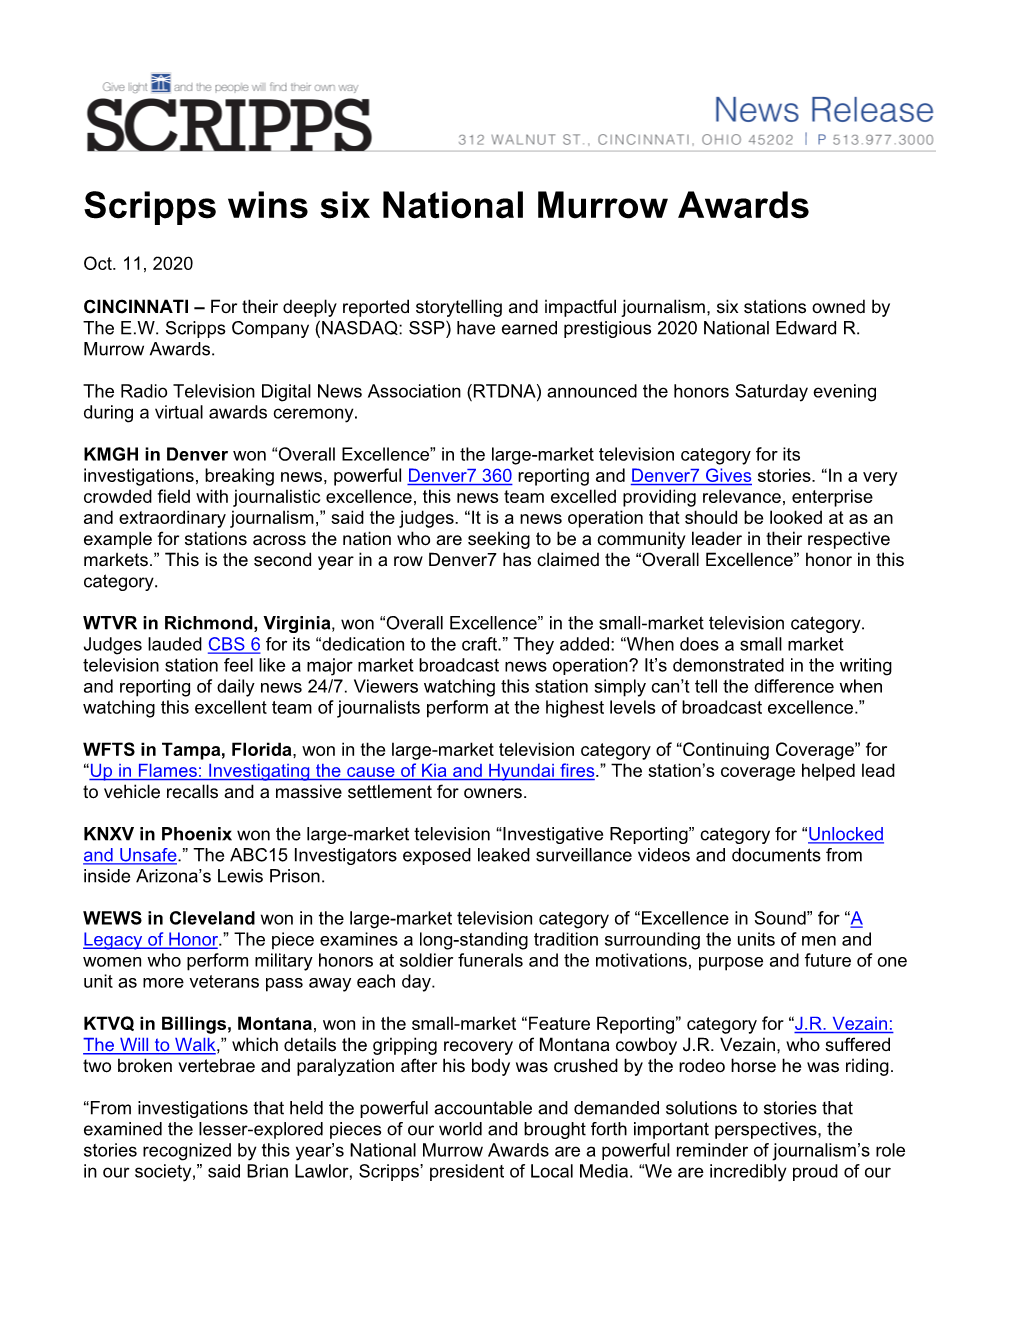 Scripps Wins Six National Murrow Awards